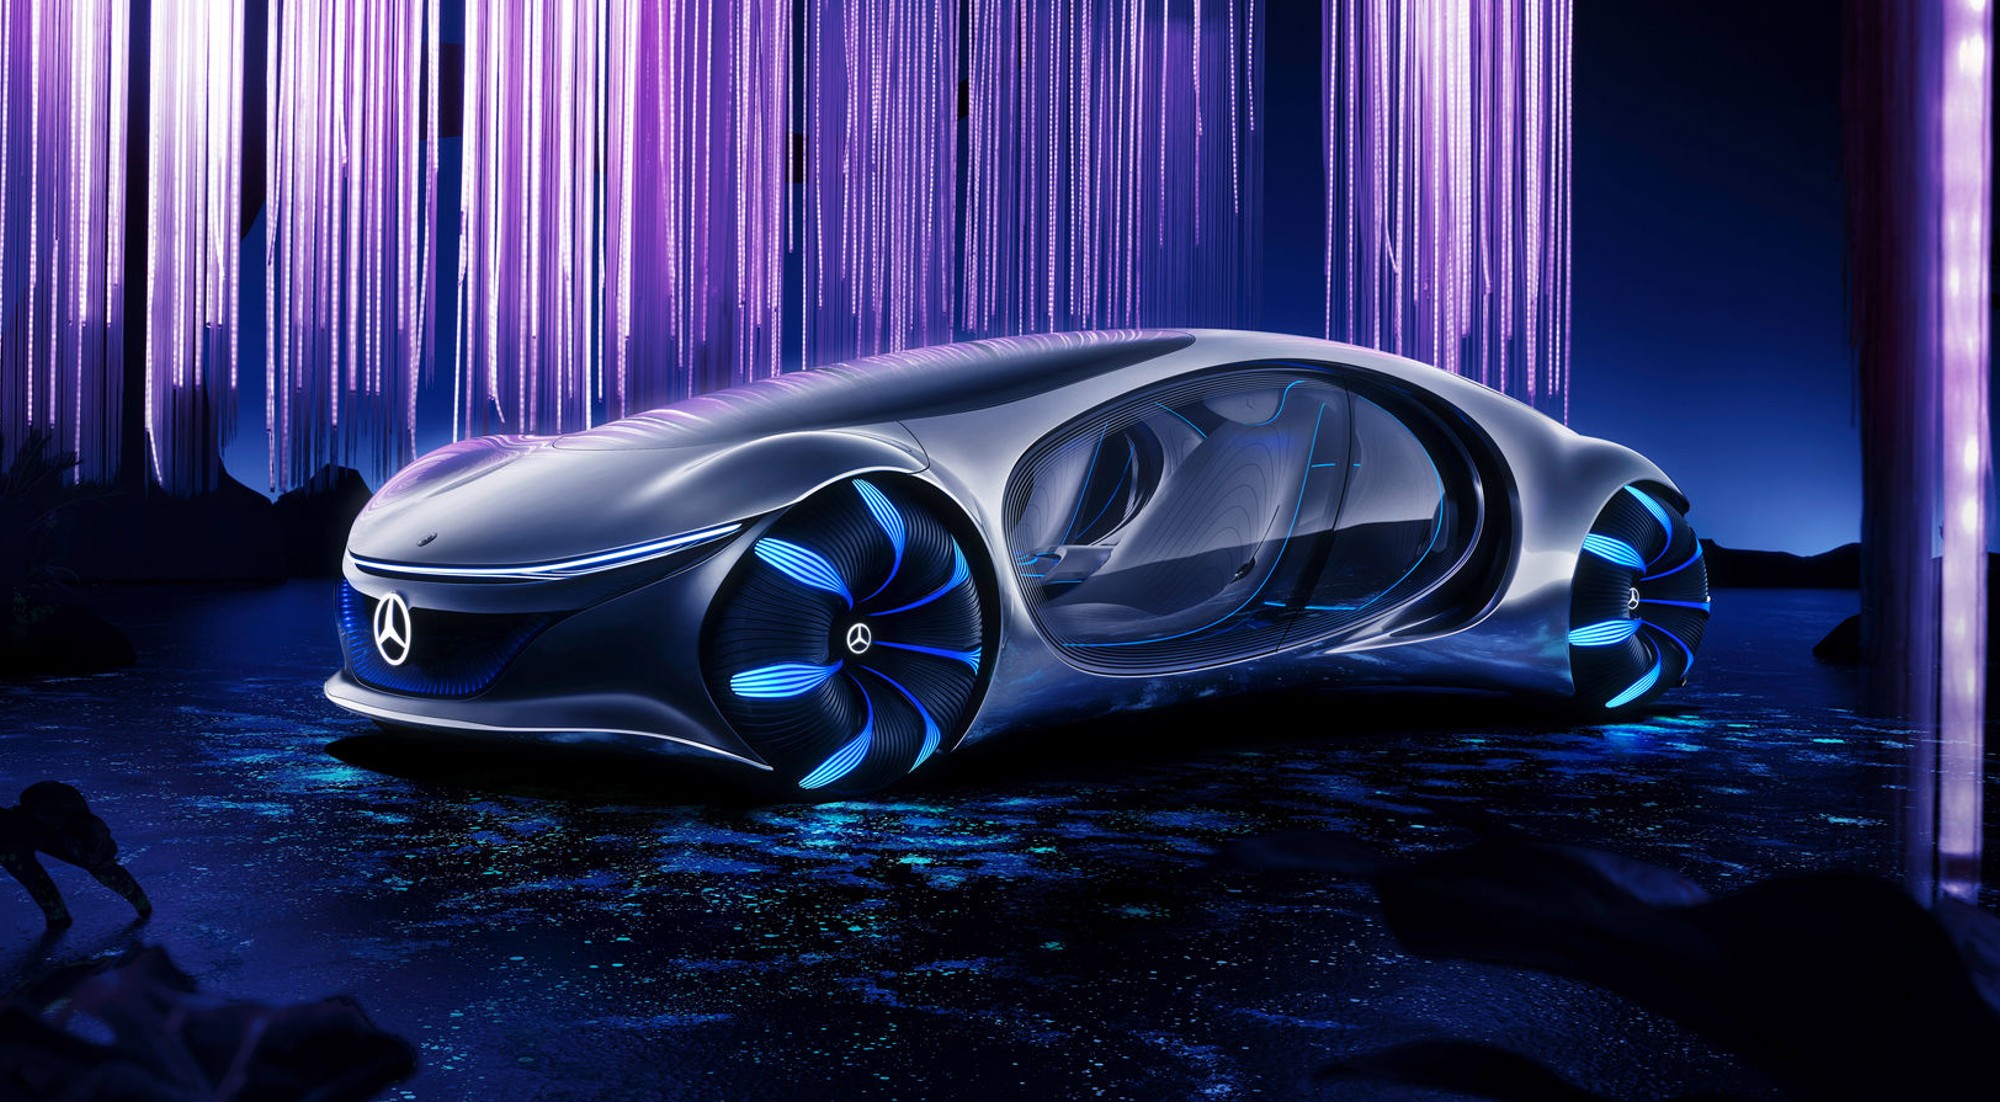 Coche futurista más bonito // Mercedes Vision AVTR